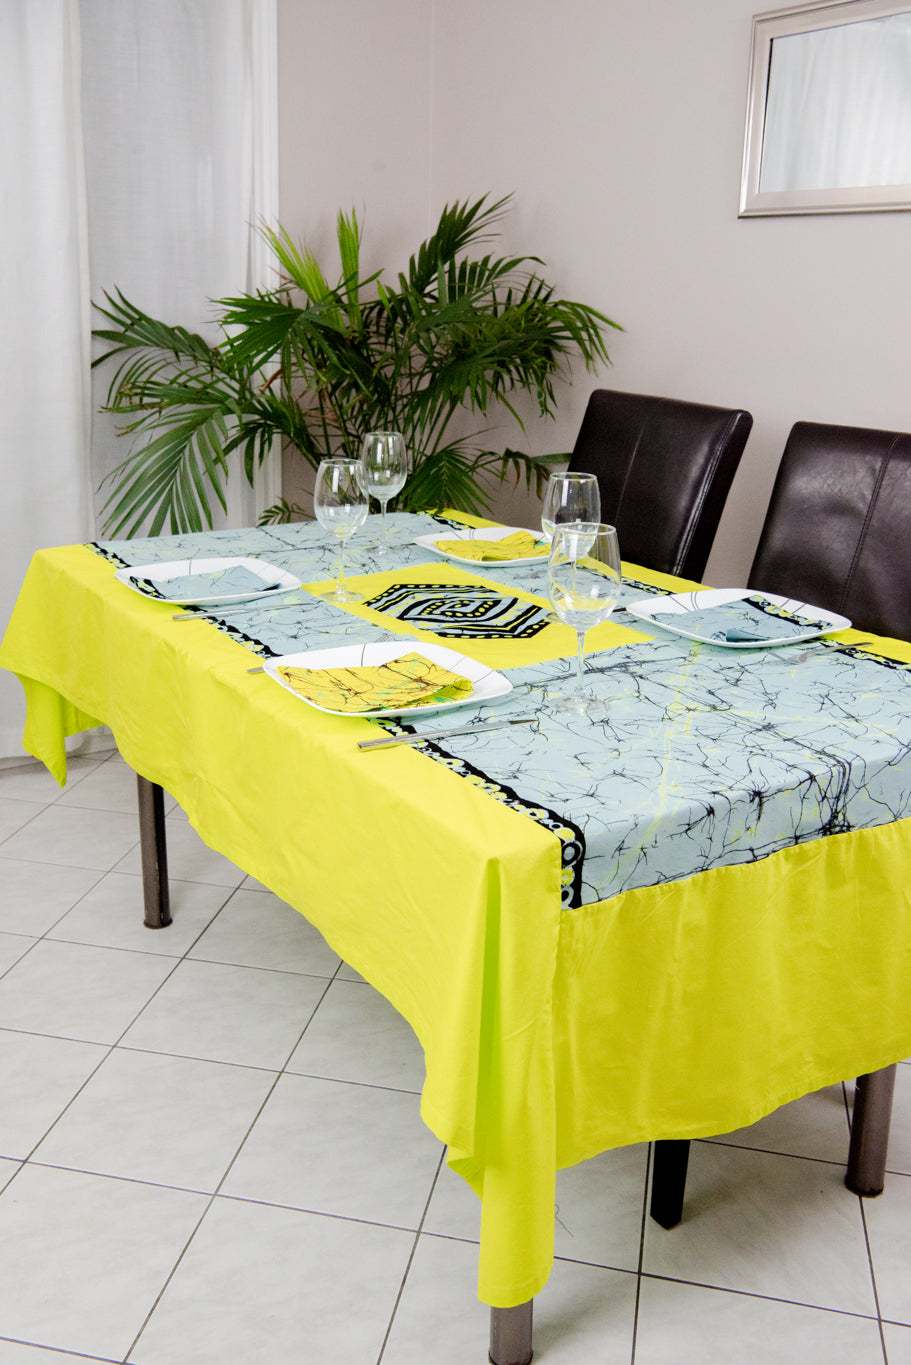 Ébène et Couleurs Styles-set de table-table cloth